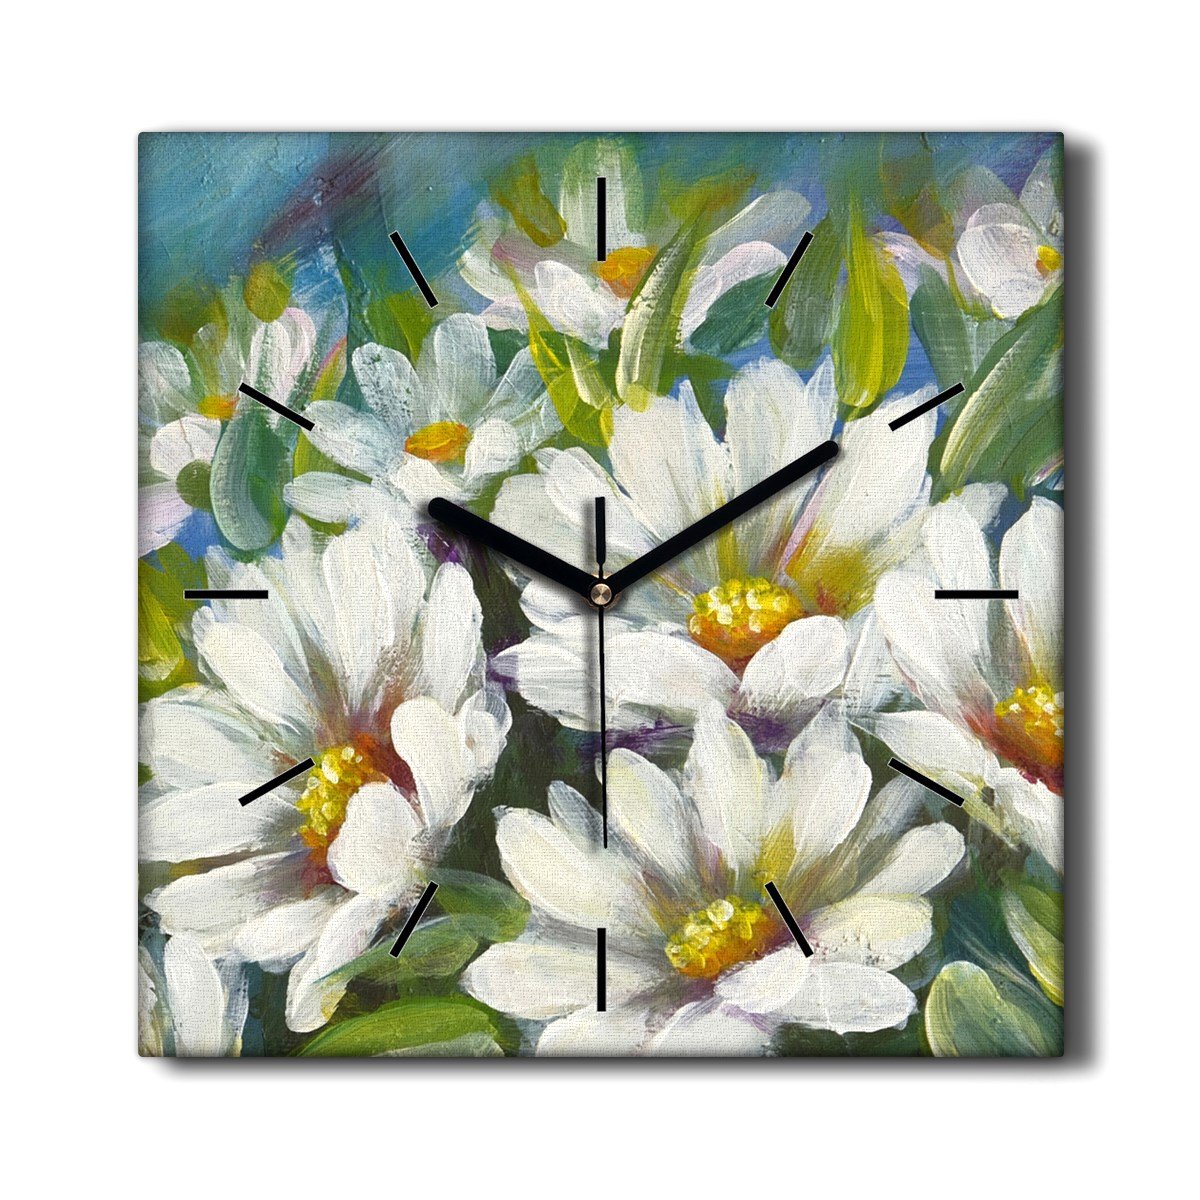 Kuchenny zegar na płótnie Malowane stokrotki 30x30, Coloray